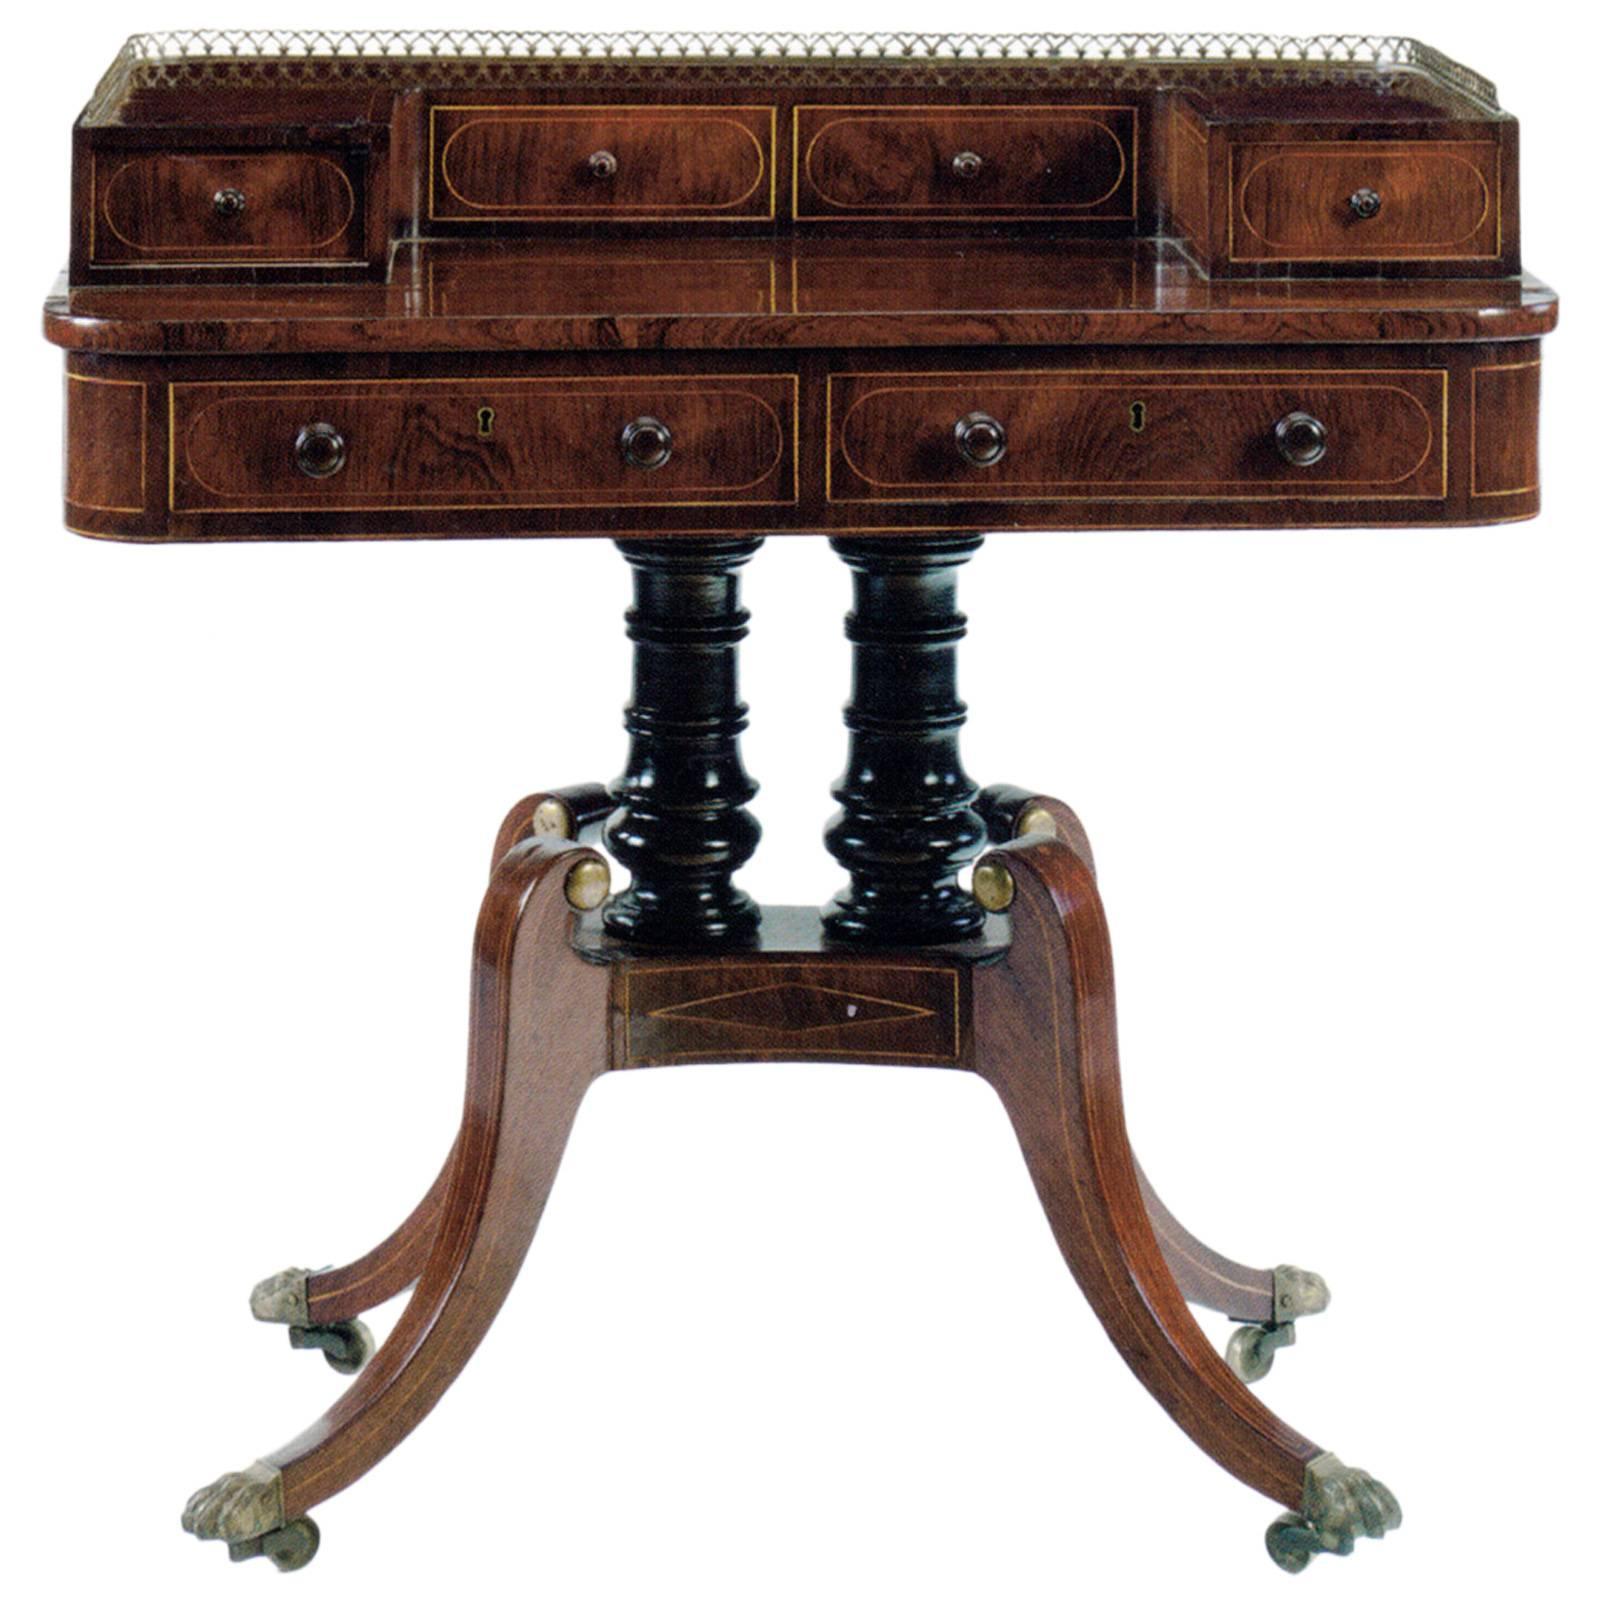 Late Regency 19th century mahogany Writing Table / desk